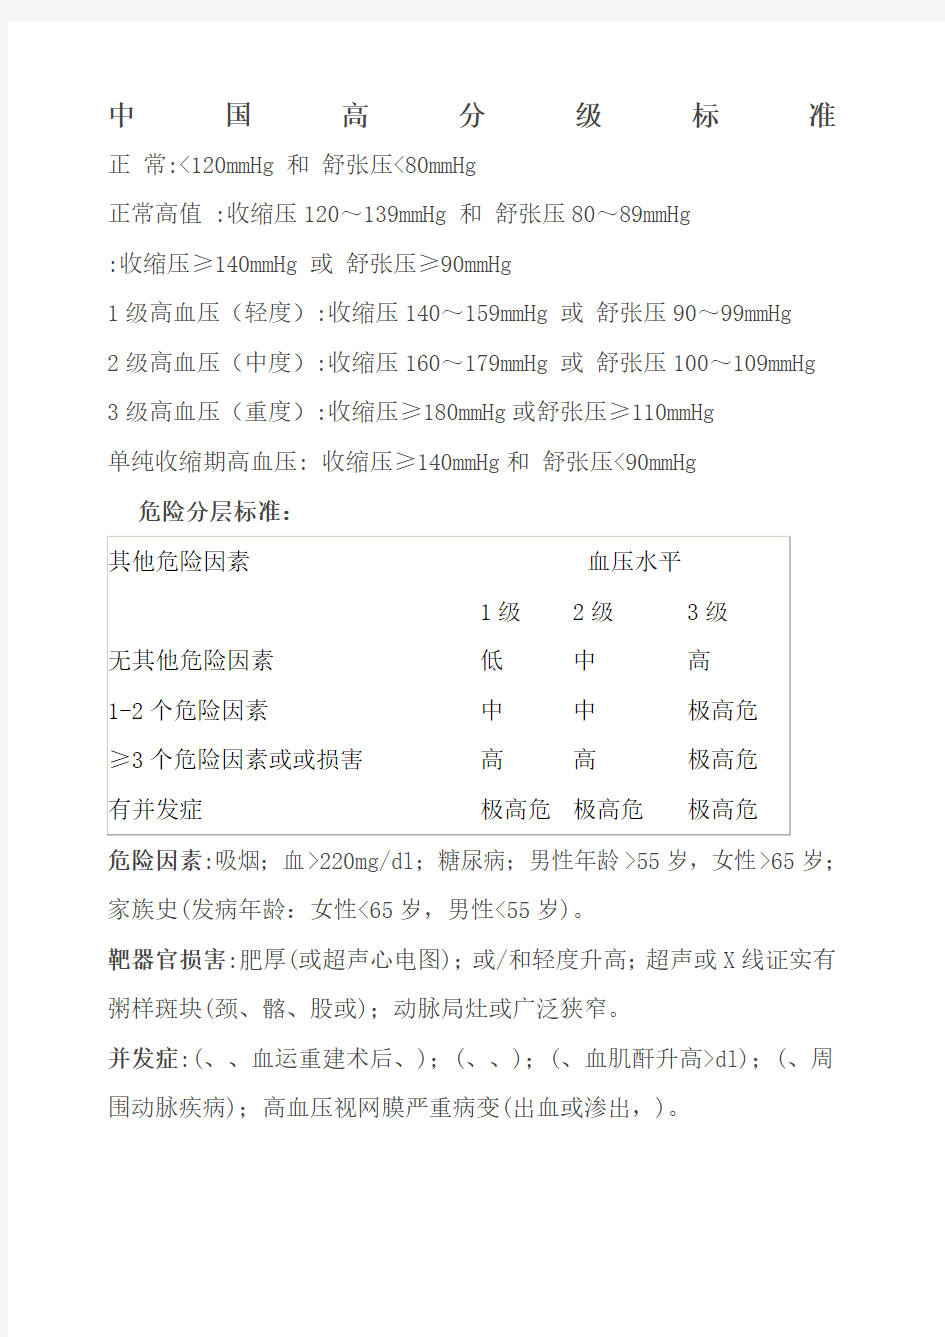 中国高血压分级标准